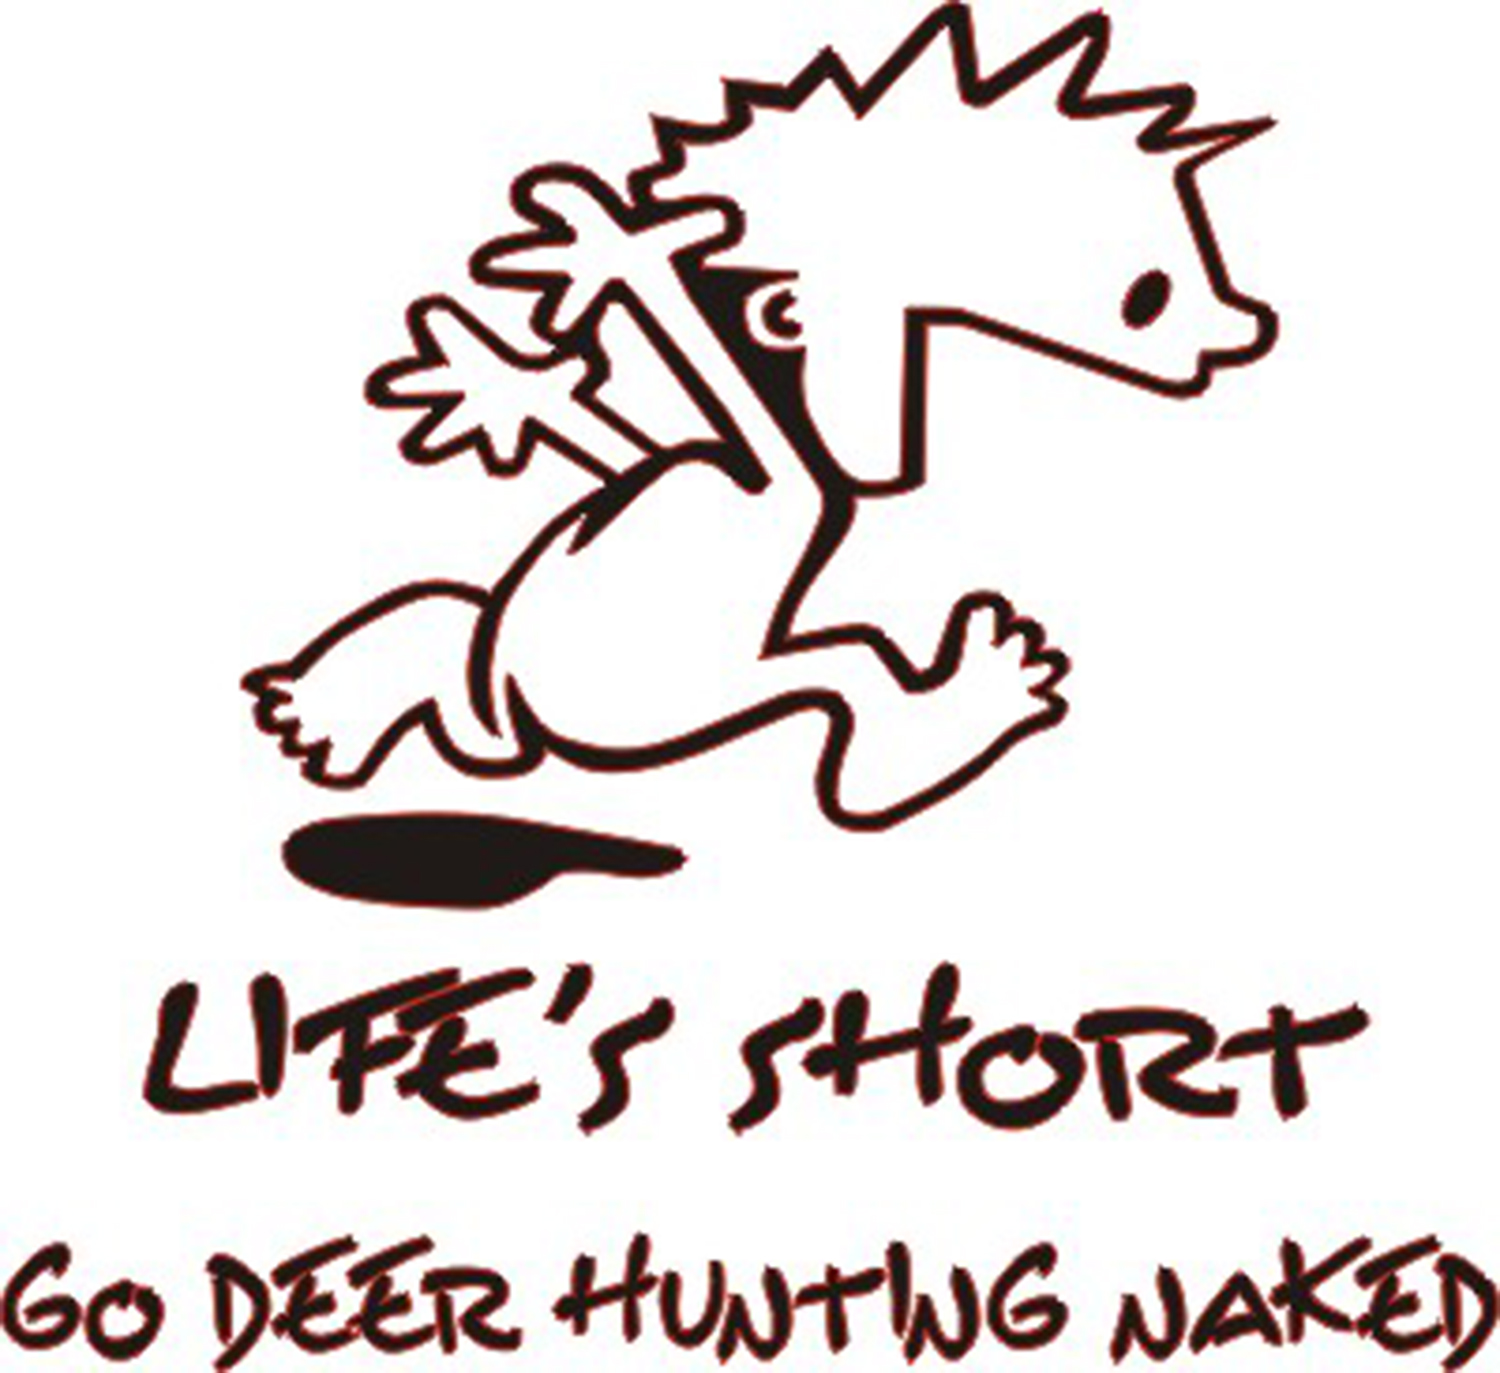 Lifes Short, Go Deer Hunting Naked Sticker